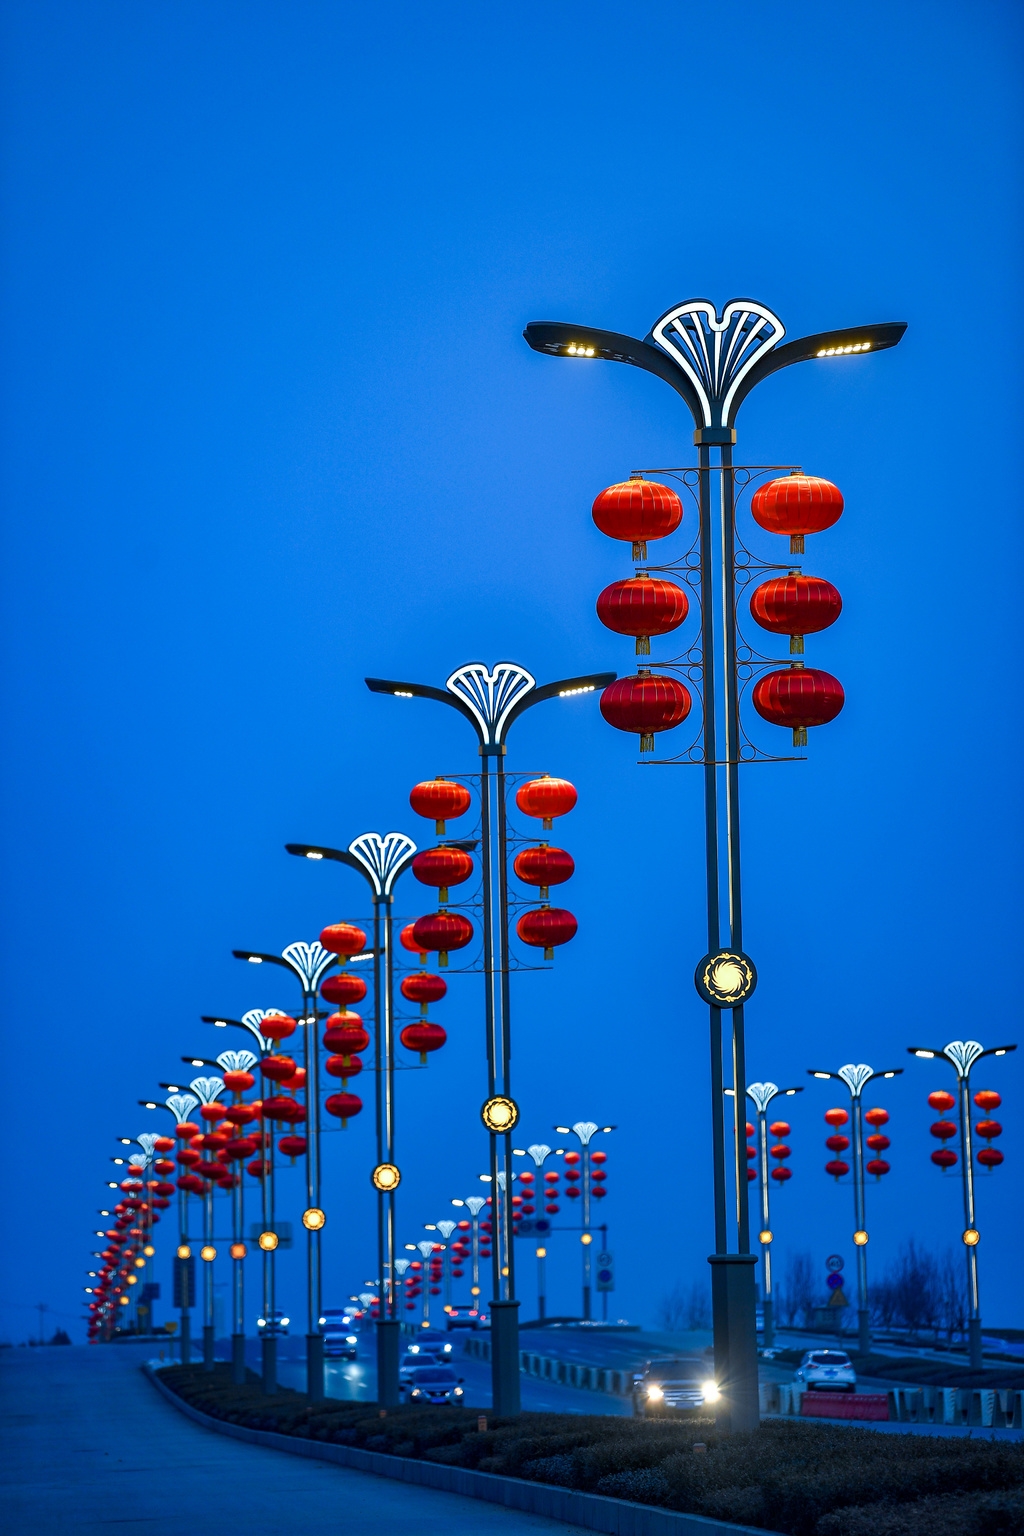 的路灯点亮,悬挂在灯架上的大红灯笼也明亮起来,春节的"氛围组"上线了